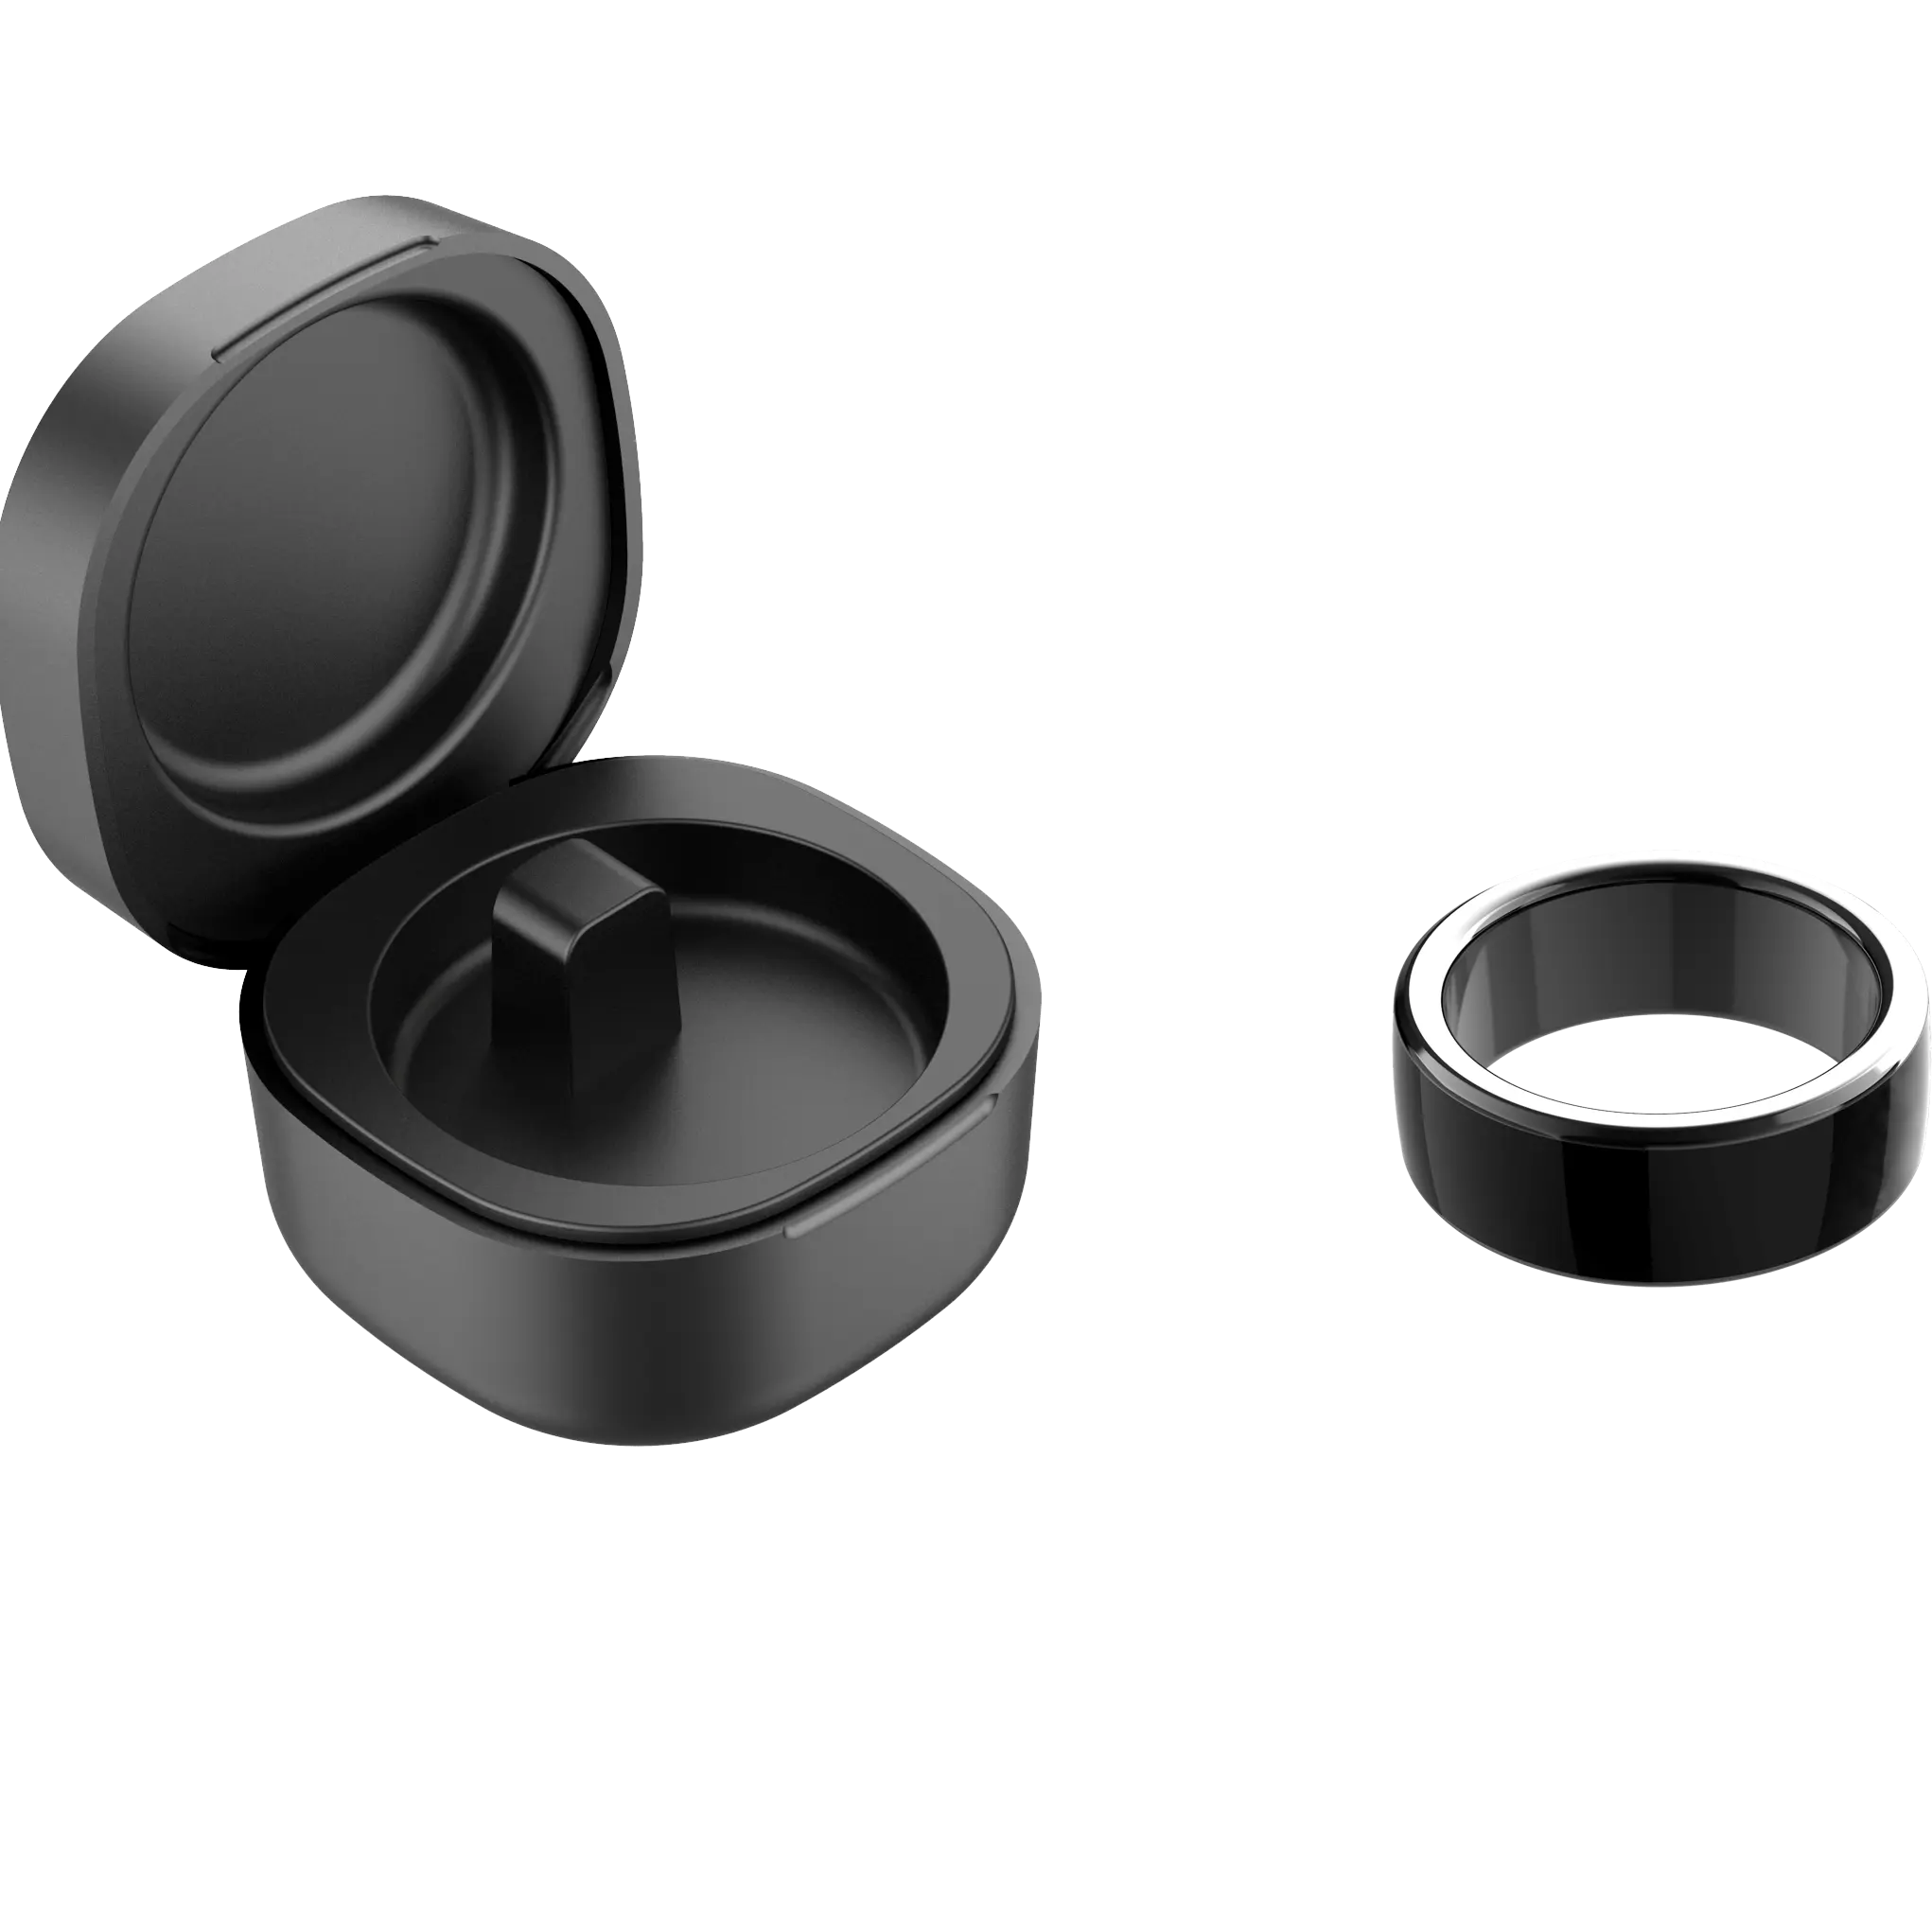 Reflektierende Mode Keramik Smart ring IPX8 wasserdichten Health Tracker Smart Ring mit Ladebox